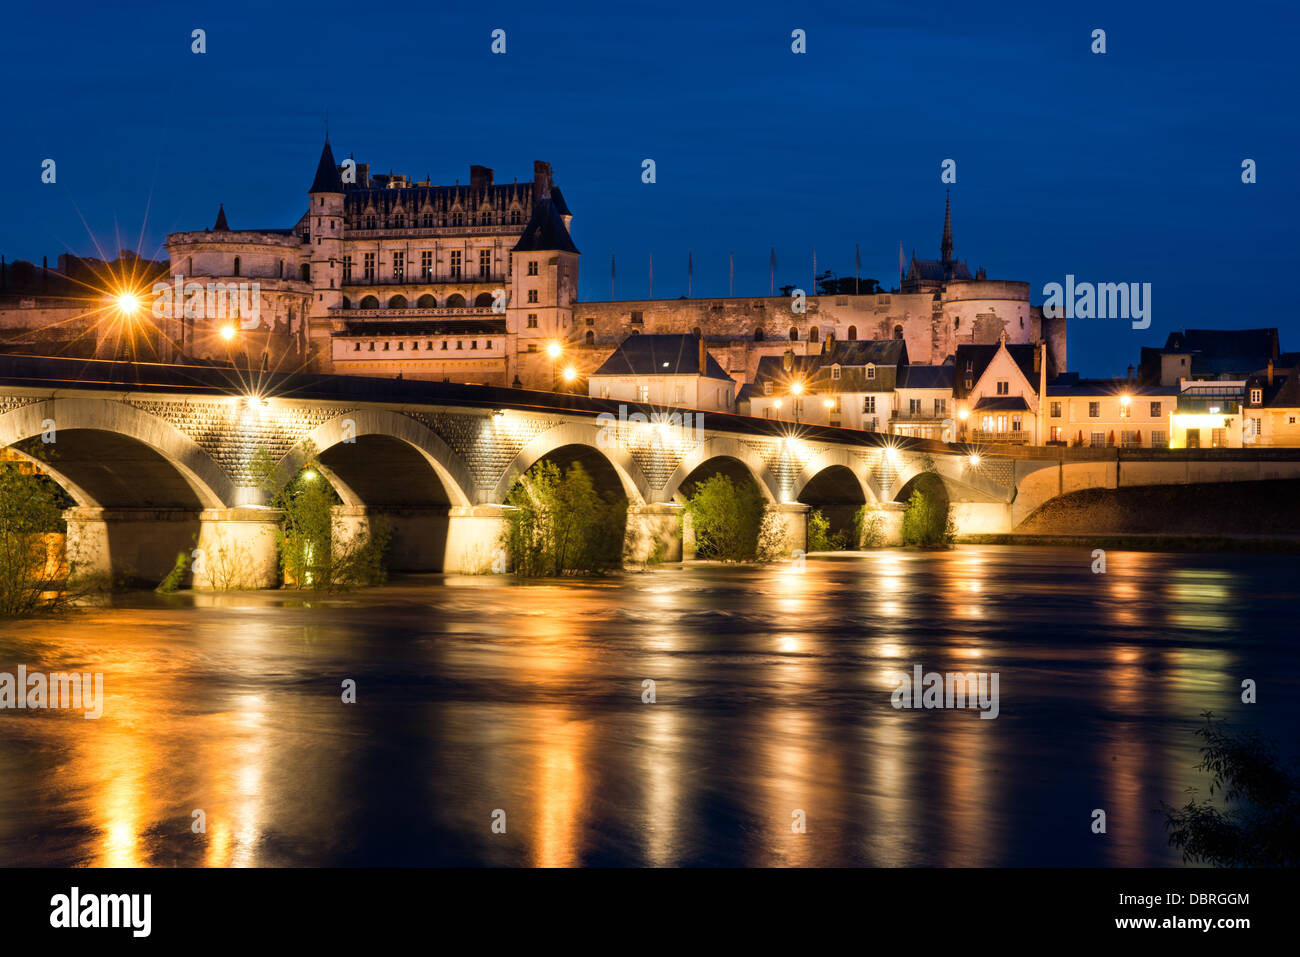 Das historische Schloss, Stadt & Brücke in Amboise abends beleuchtet und spiegelt sich in den Fluss Loire, Frankreich Stockfoto